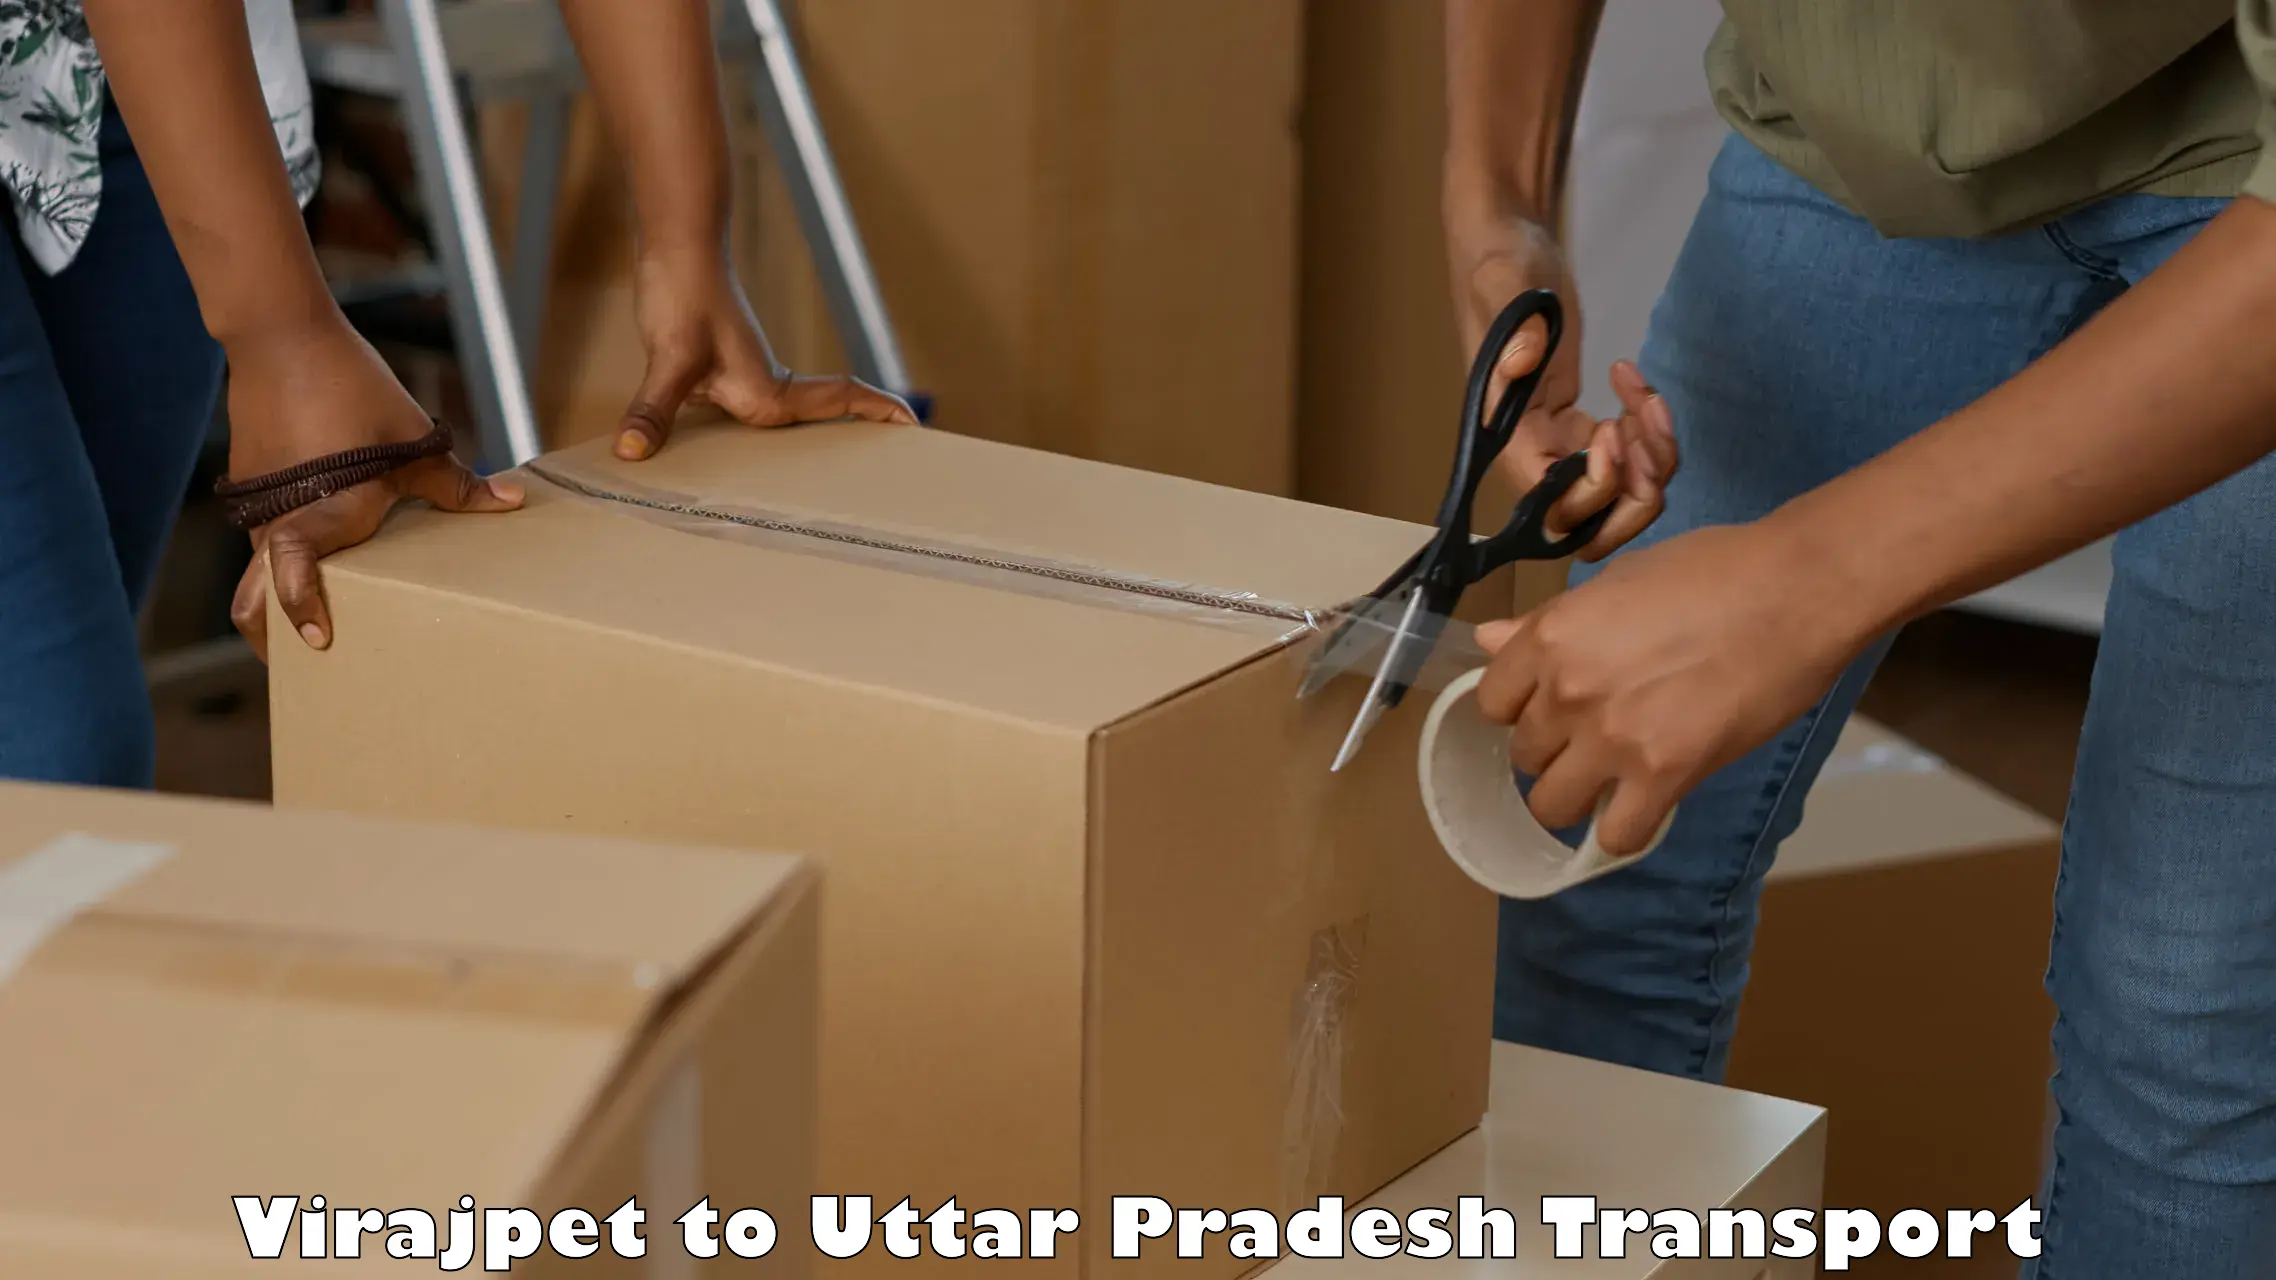 Container transport service Virajpet to Gauri Bazar